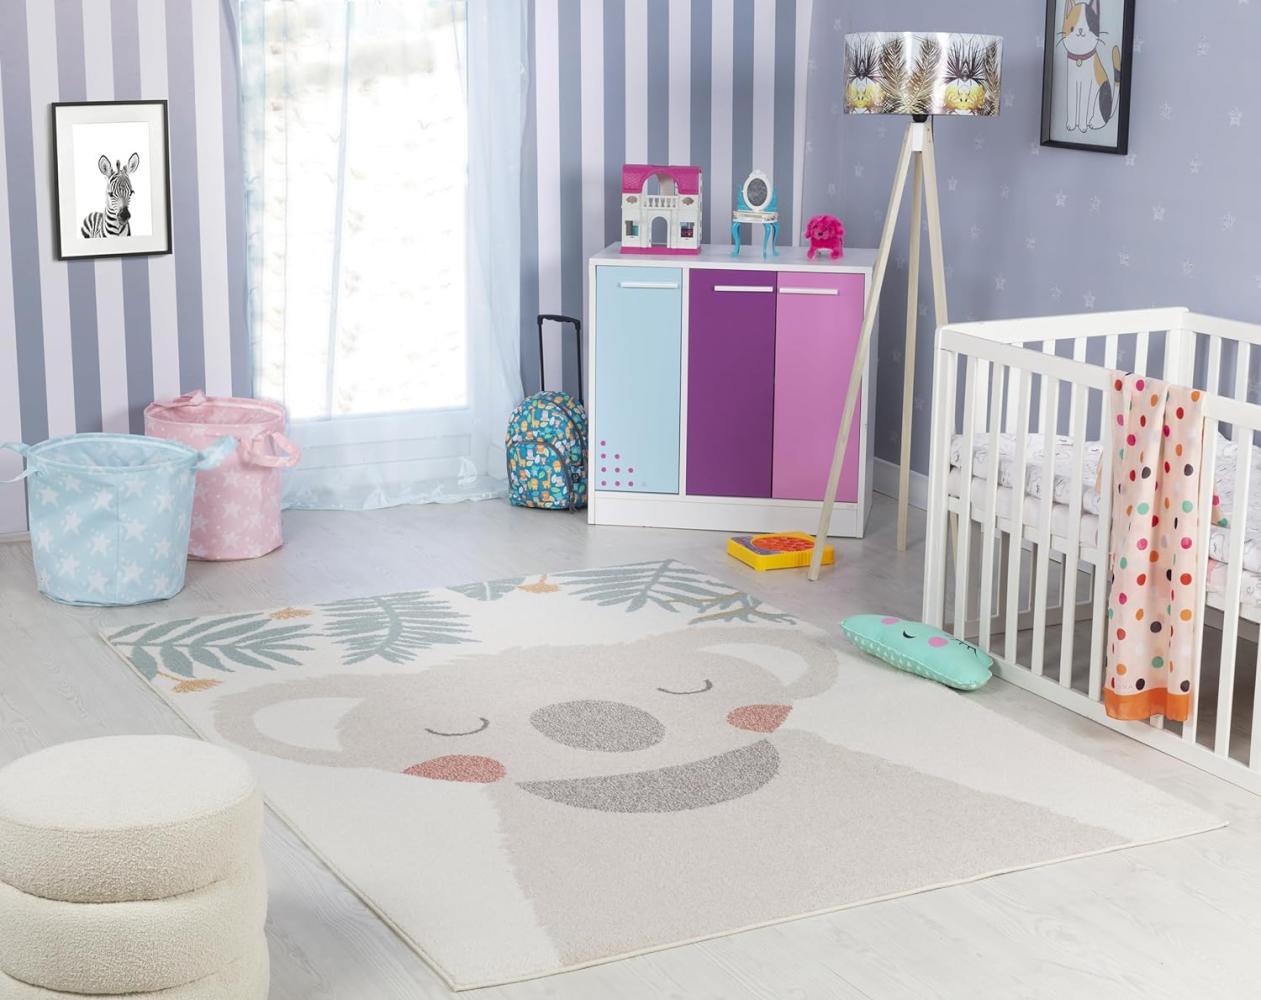 Surya Koala Kinderteppich - Cartoon Teppich Kinderzimmer oder Babyzimmer, Kinderzimmerteppich, Krabbelteppich oder Spielteppich - Baby Teppich für Jungen & Mädchen, Beige und Elfenbein 120x170cm Bild 1